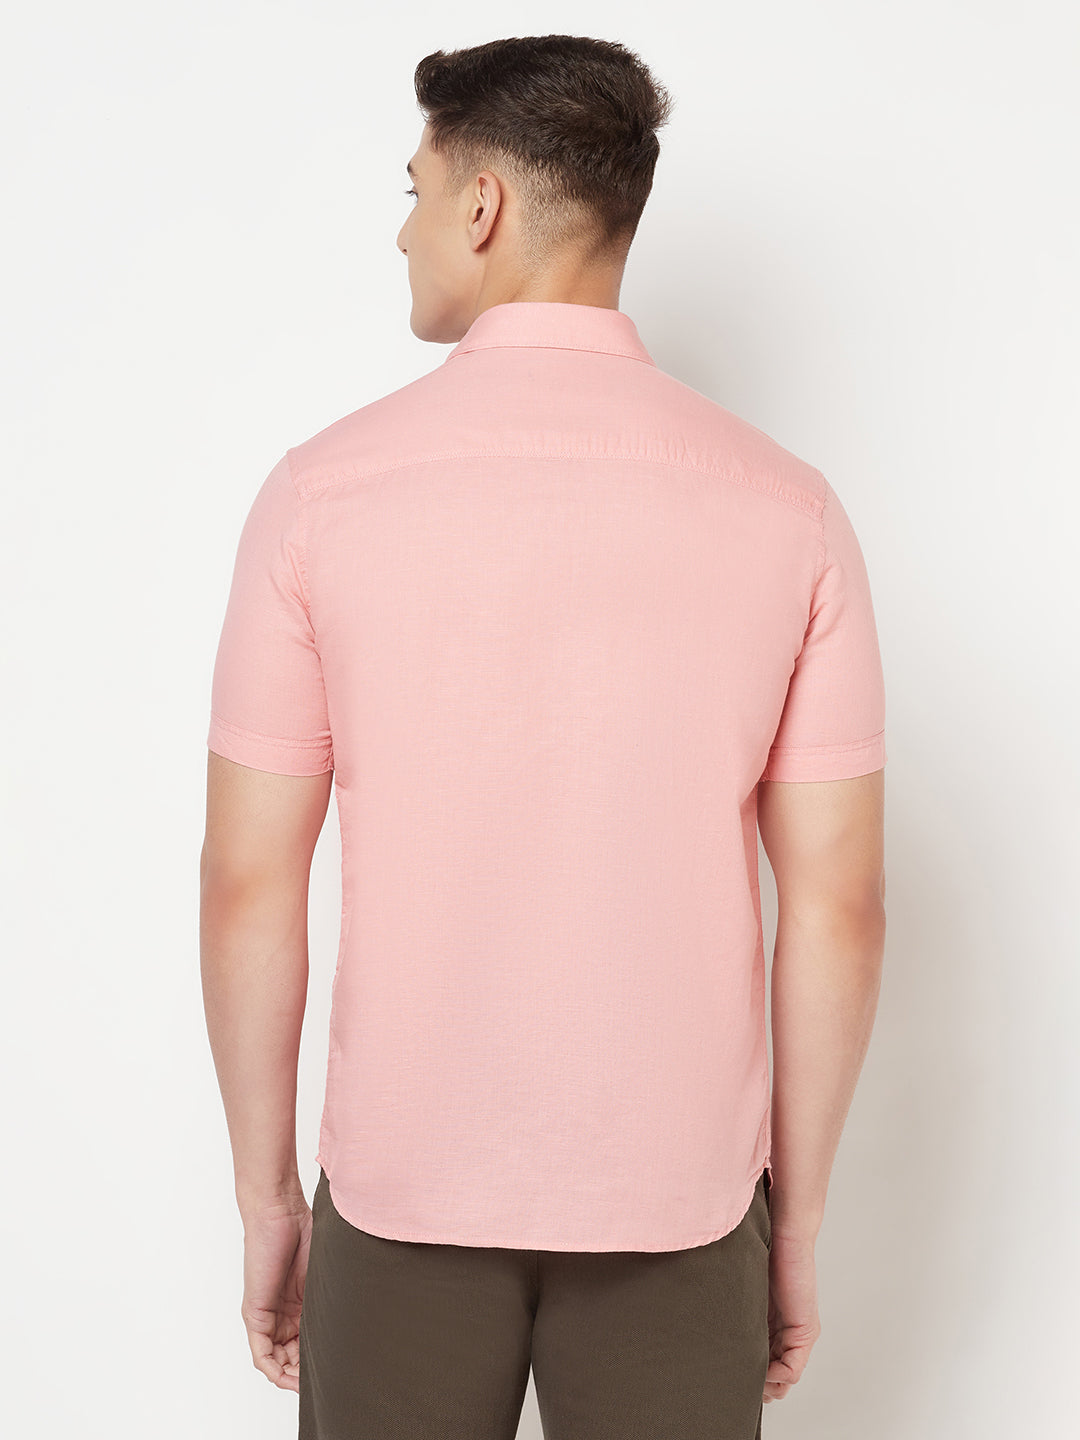 Pink Linen Shirt - Men Shirts